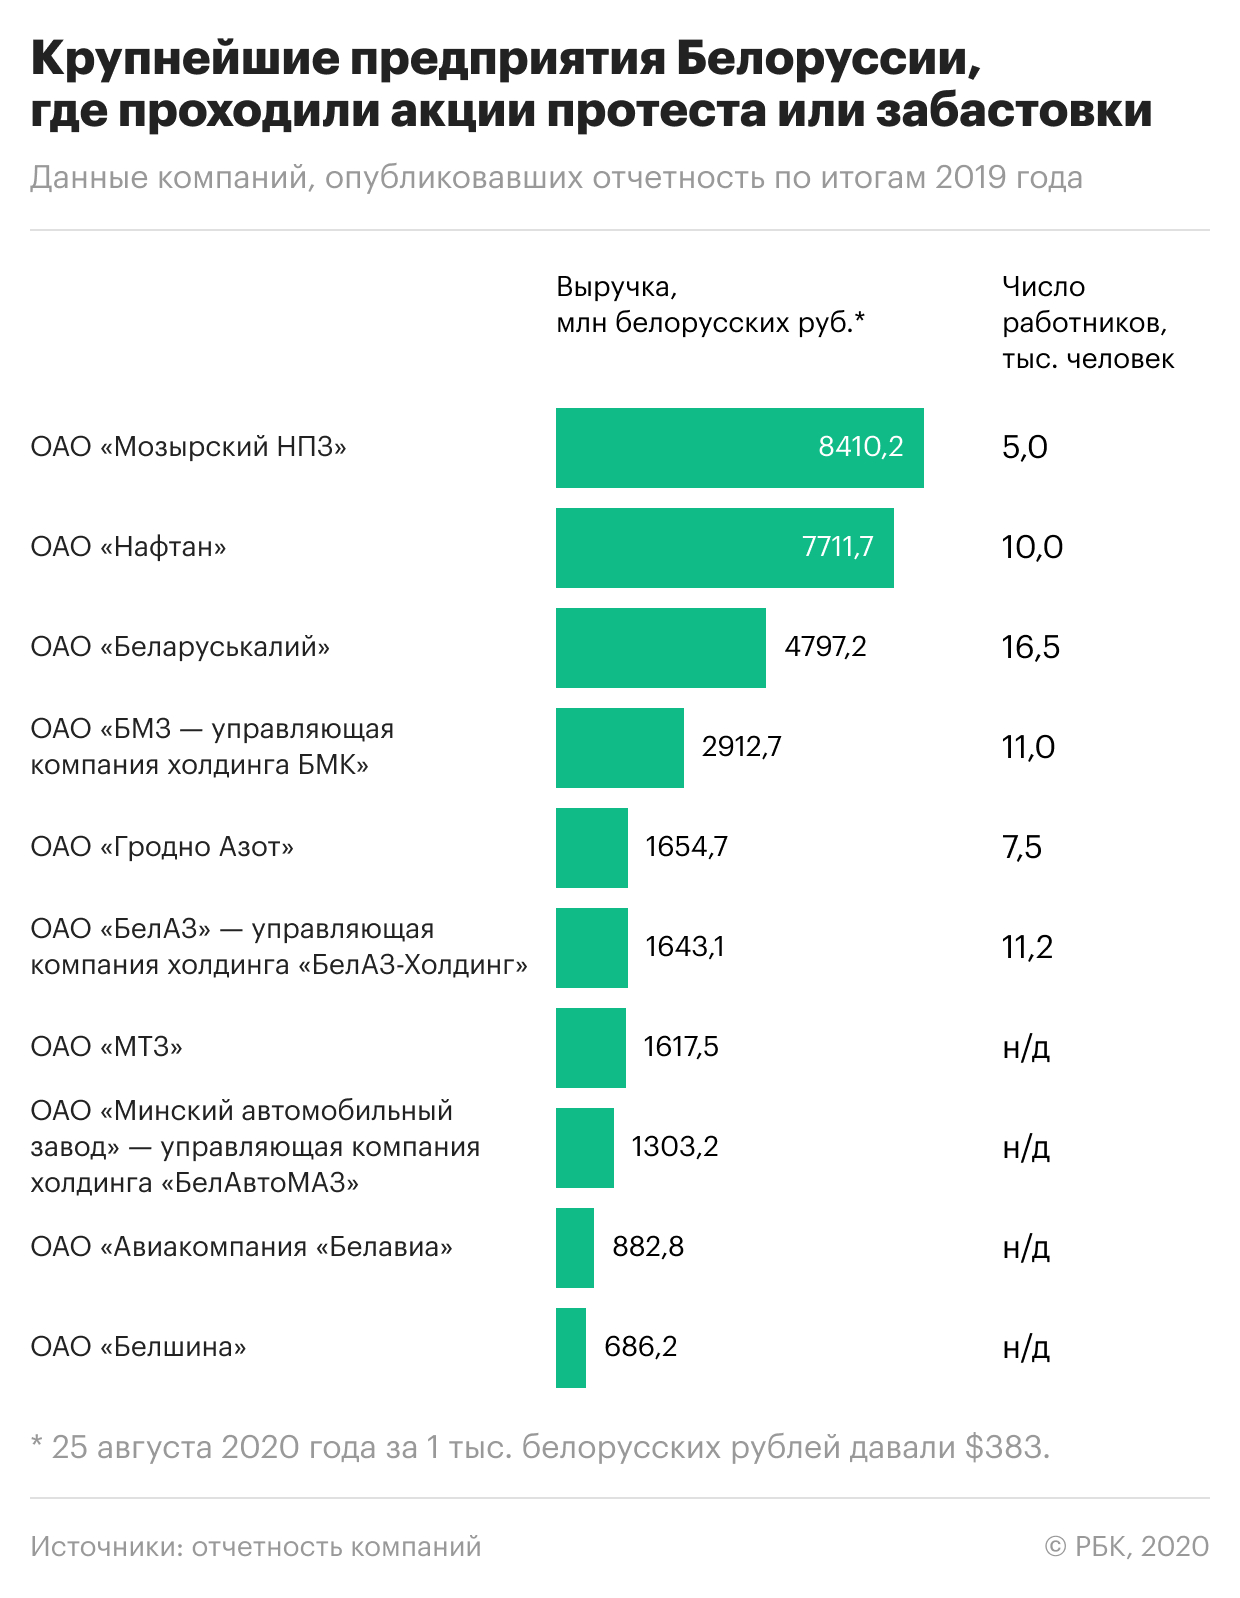 Каков масштаб протестов на предприятиях в Белоруссии. Что важно знать